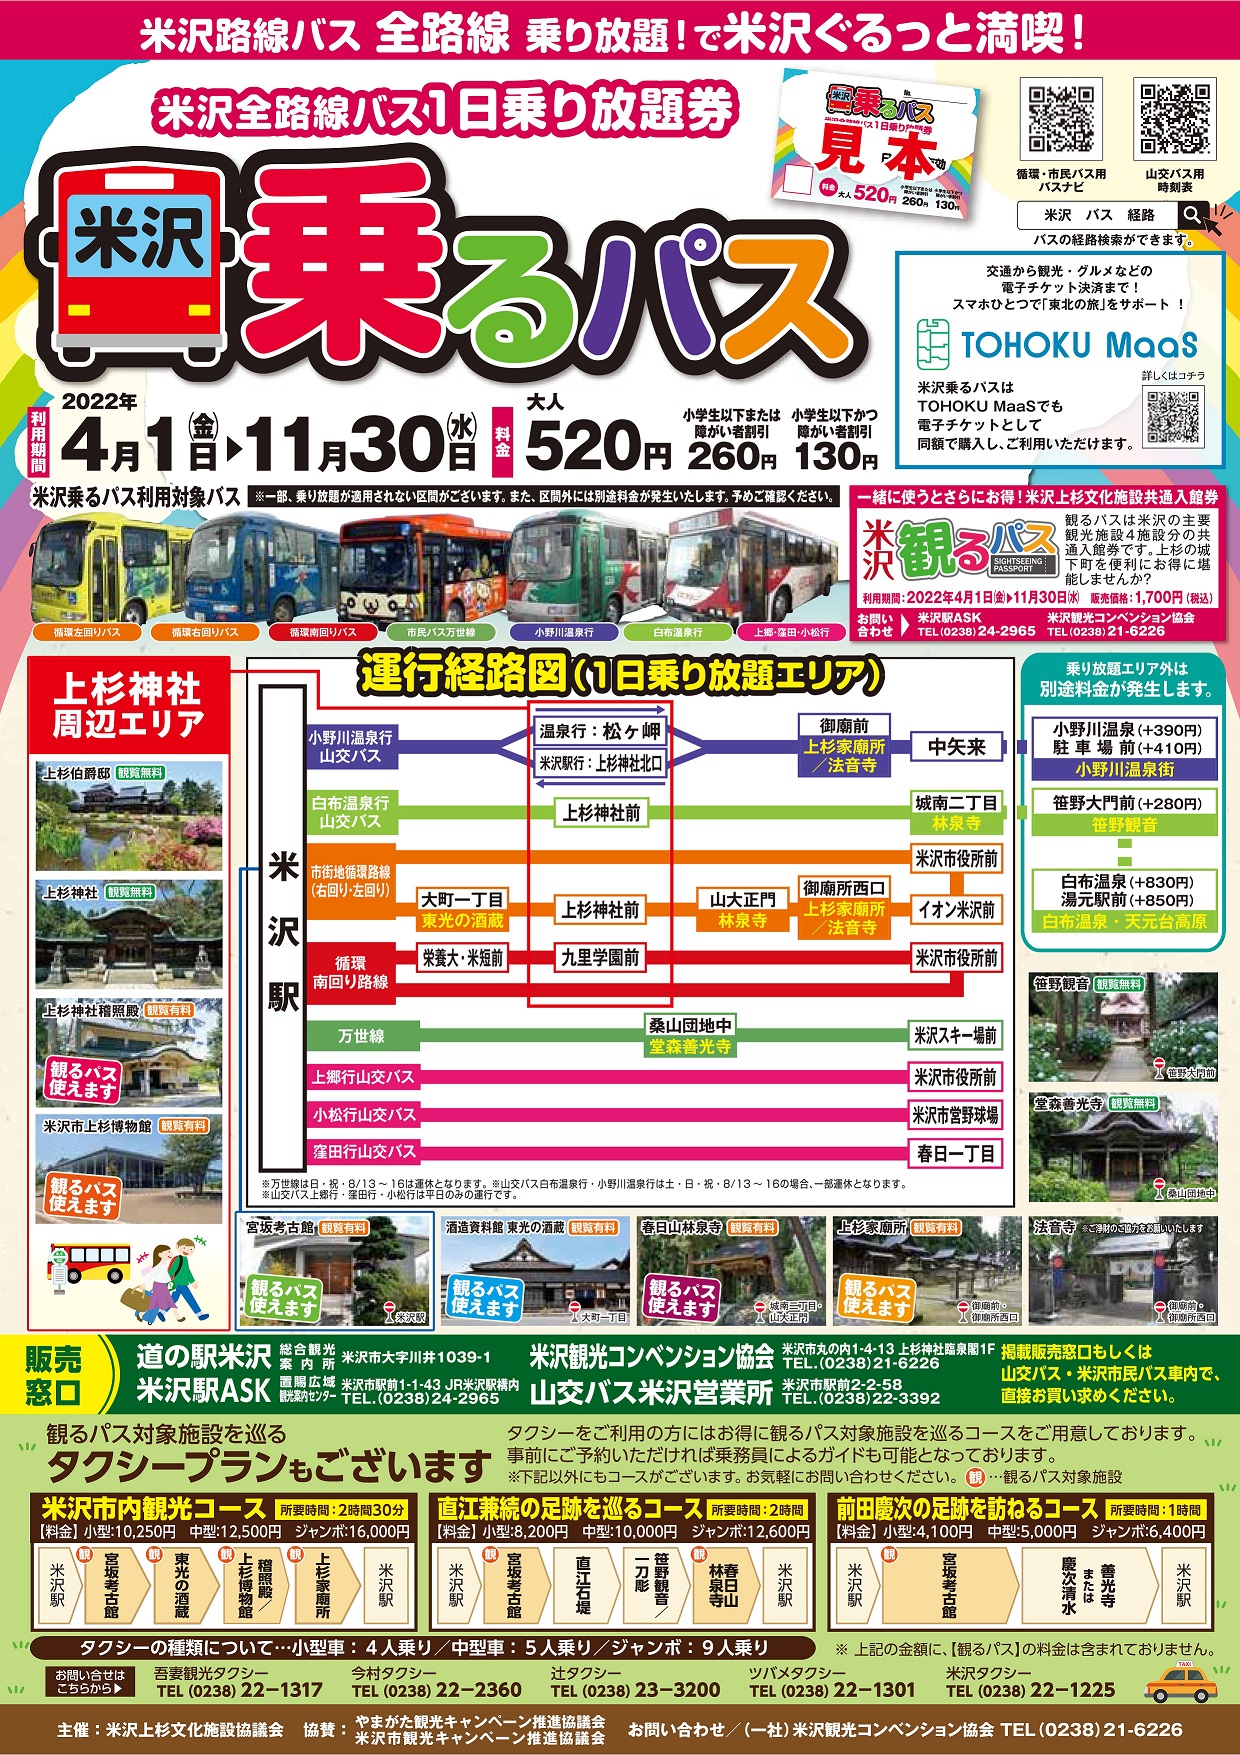 米沢乗るパス（米沢市内全路線バス1日乗り放題券）4月1日より販売！：画像